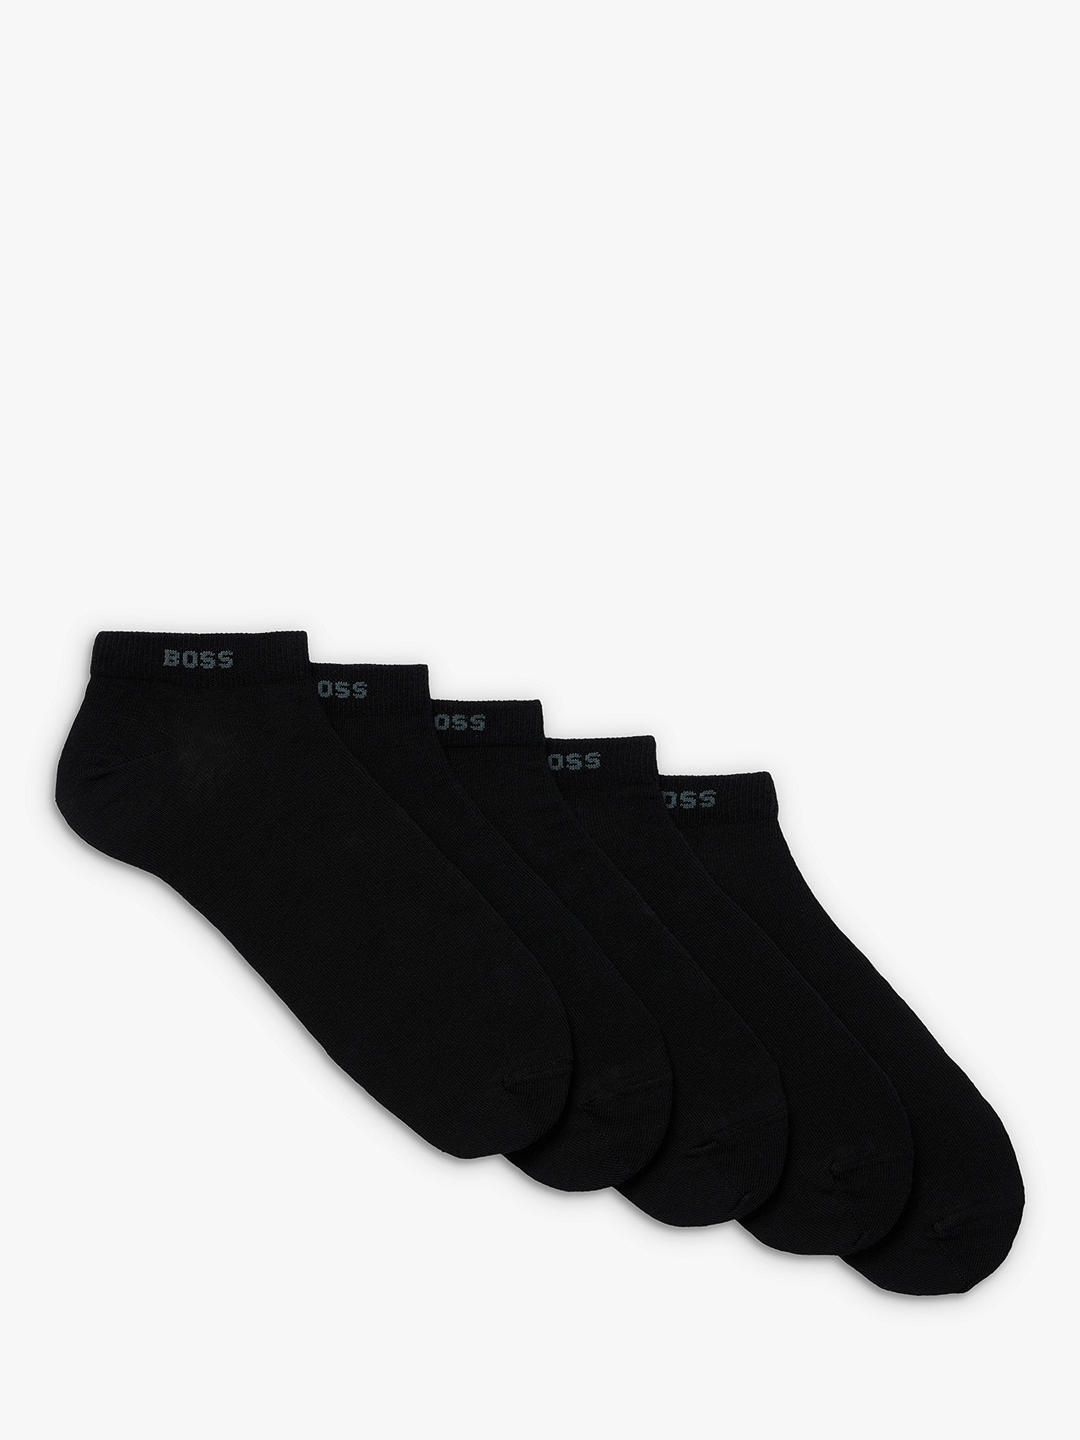 BOSS Logo Trainer Socks, Pack of 5, Black